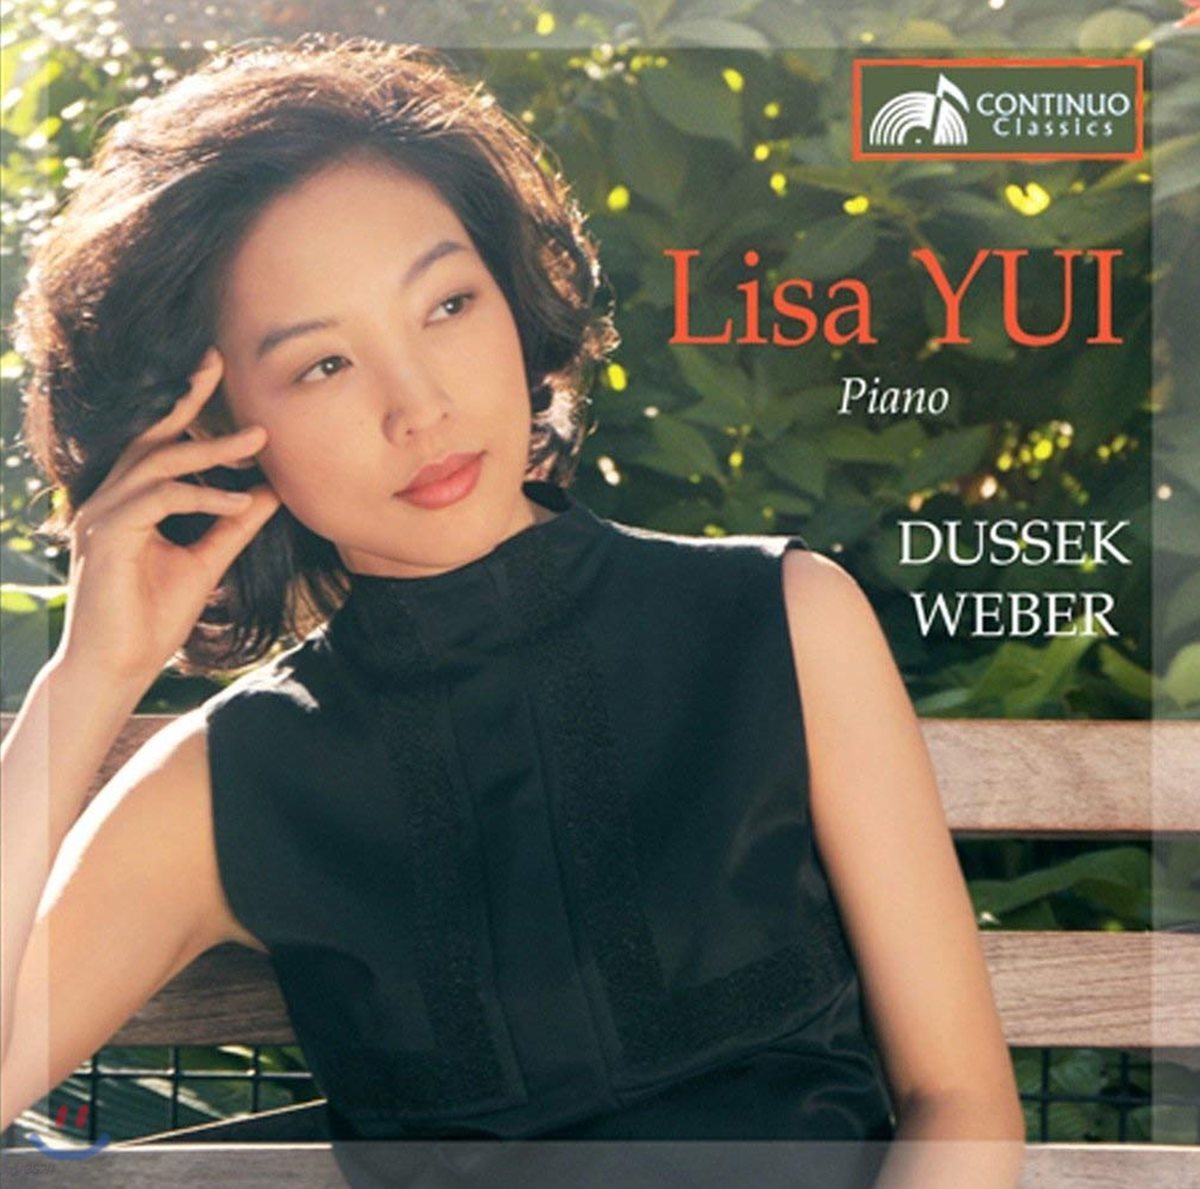 Lisa Yui 베버: 피아노 소나타 1번 / 두세크: 피아노 소나타 8, 24번 (Weber: Piano Sonata No. 1 in C Major, Op. 24 / Dussek: Piano Sonata No. 8 & 24)